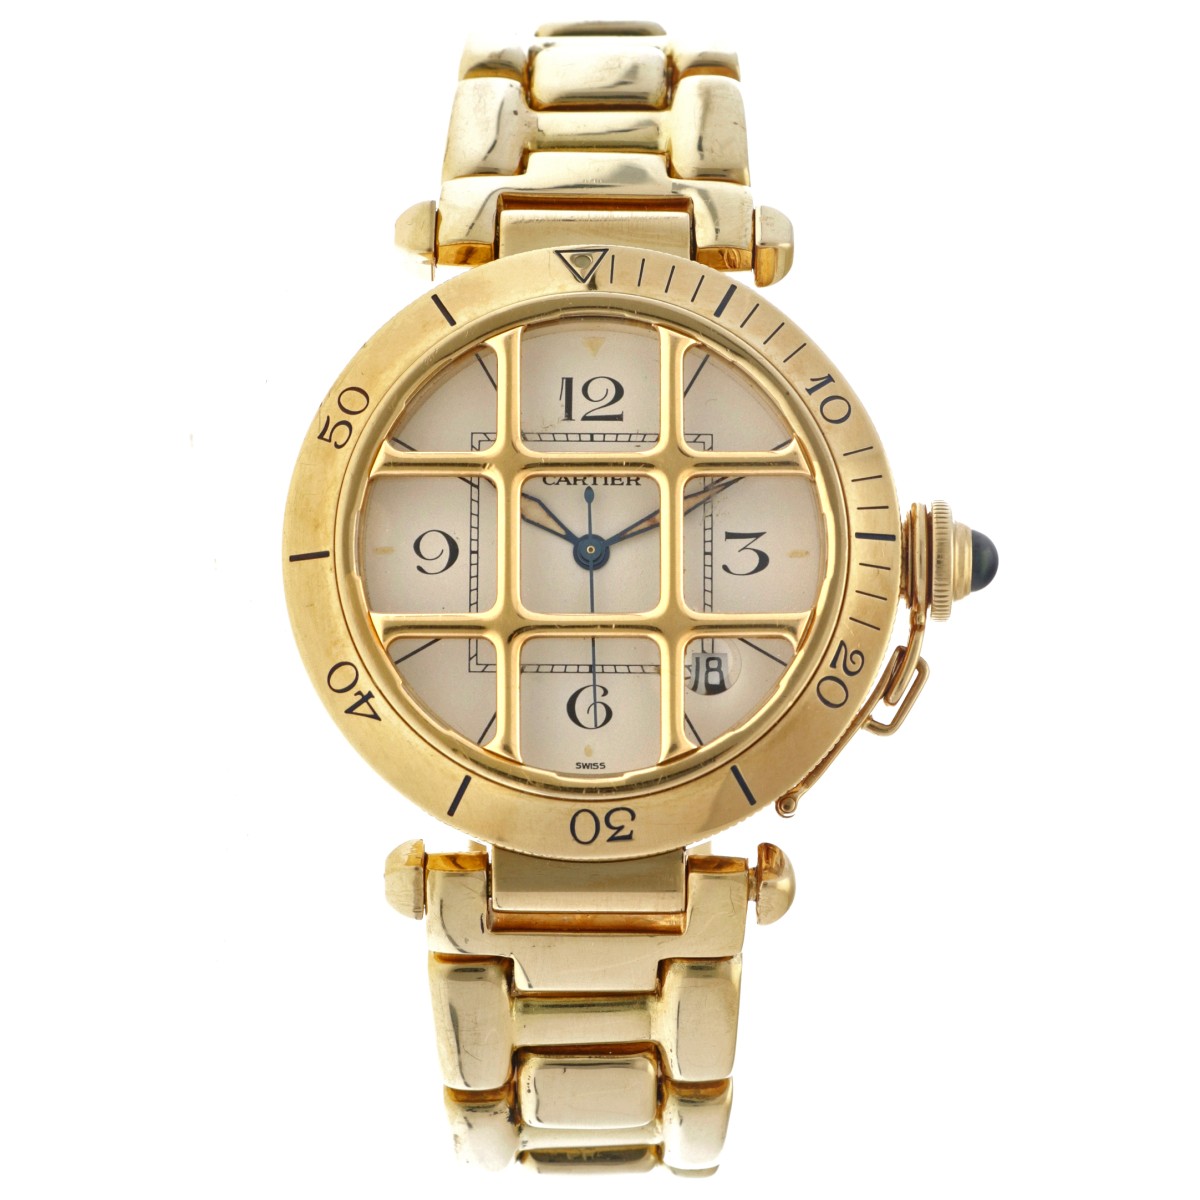 Cartier Pasha 18K. 1021 1 - Heren horloge. 